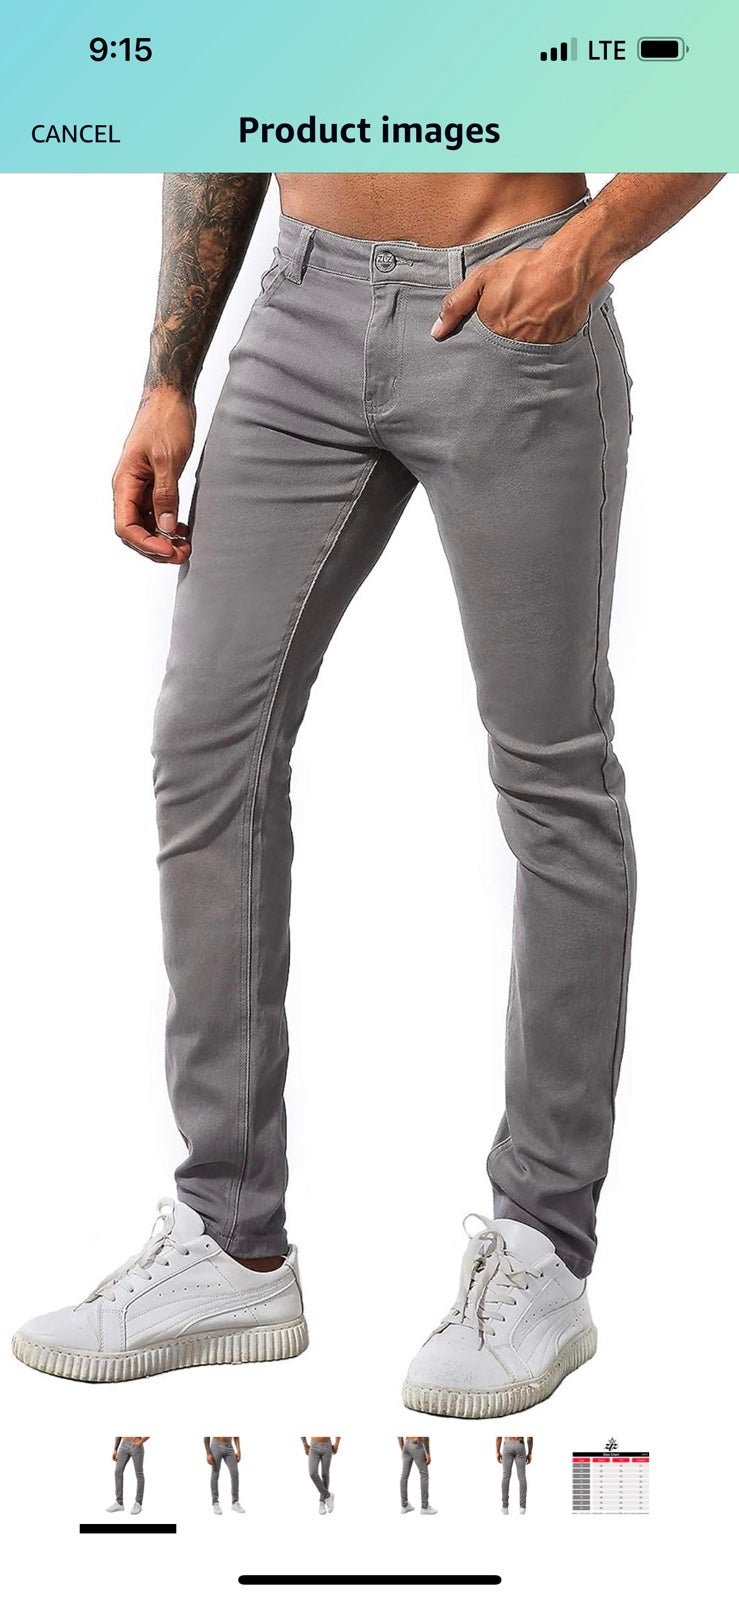 Gorgeous NWT Slim Fit Stretch Comfy Fashion Denim Jeans Pants gjRKWVQJP Online Shop